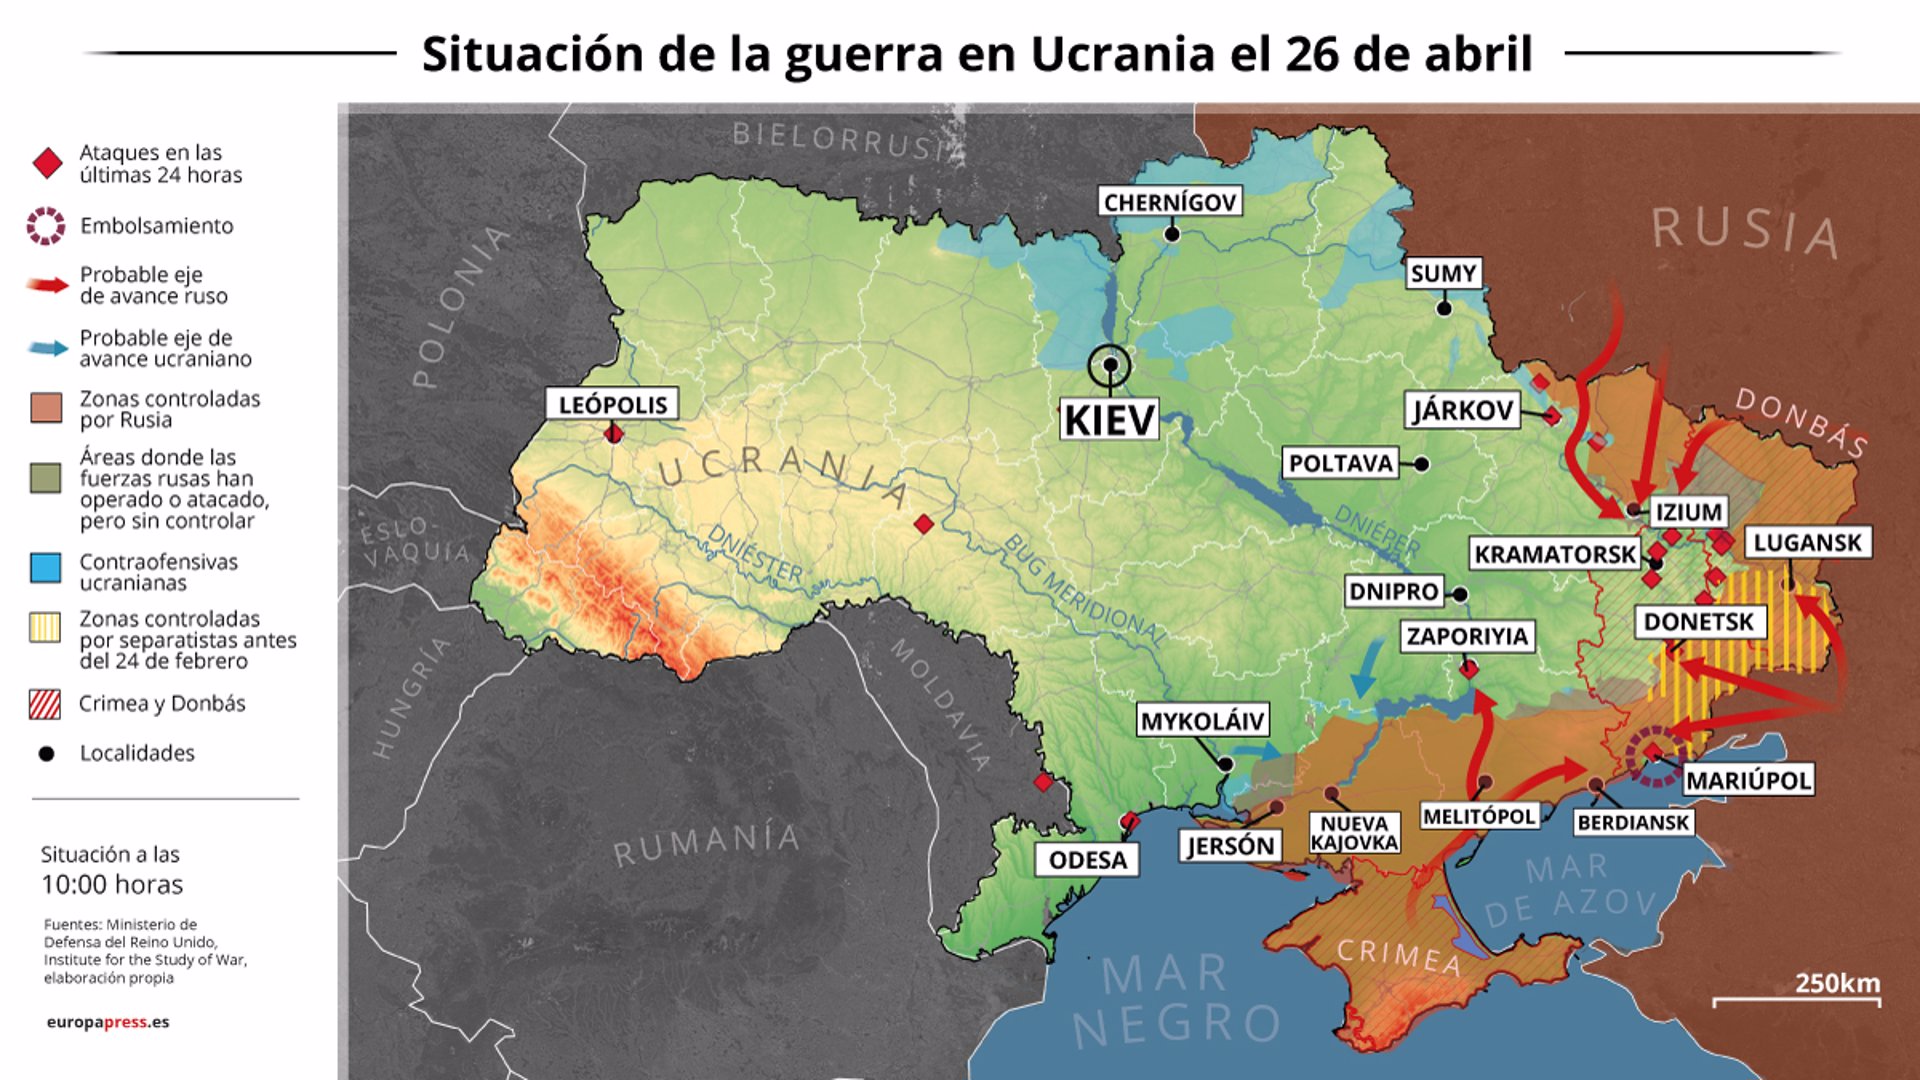 Mapa con la situación de la guerra en Ucrania el 26 de abril de 2022